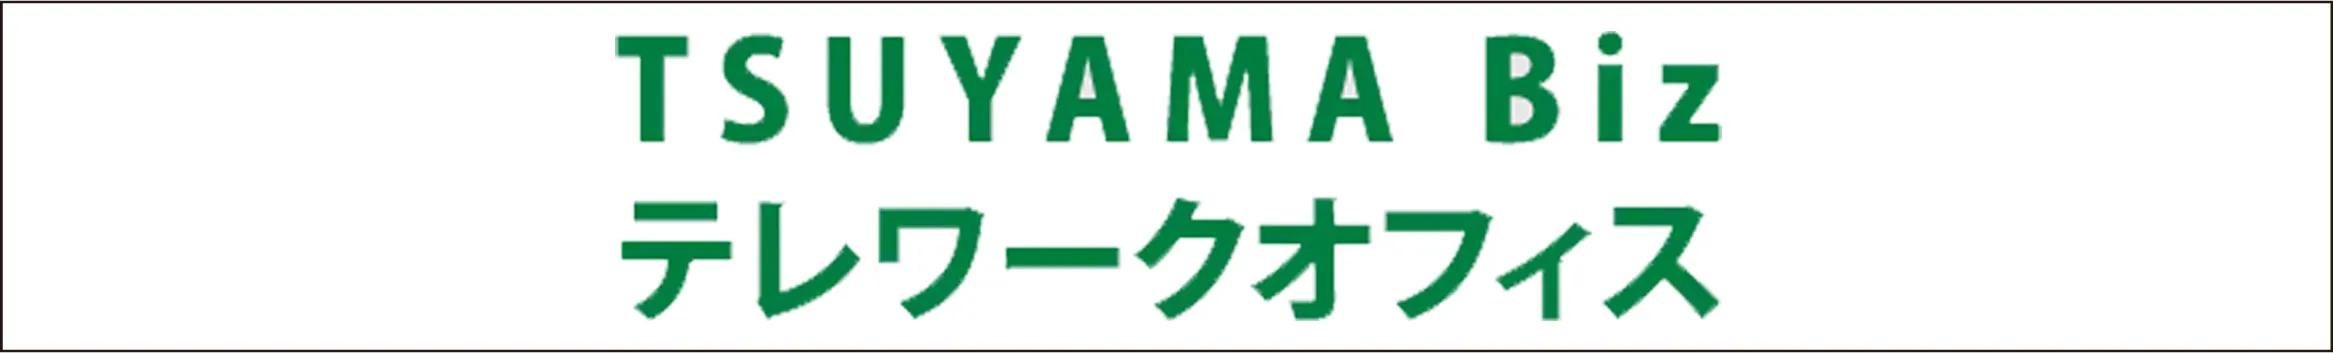 TSUYAMA BIZ テレワークオフィス